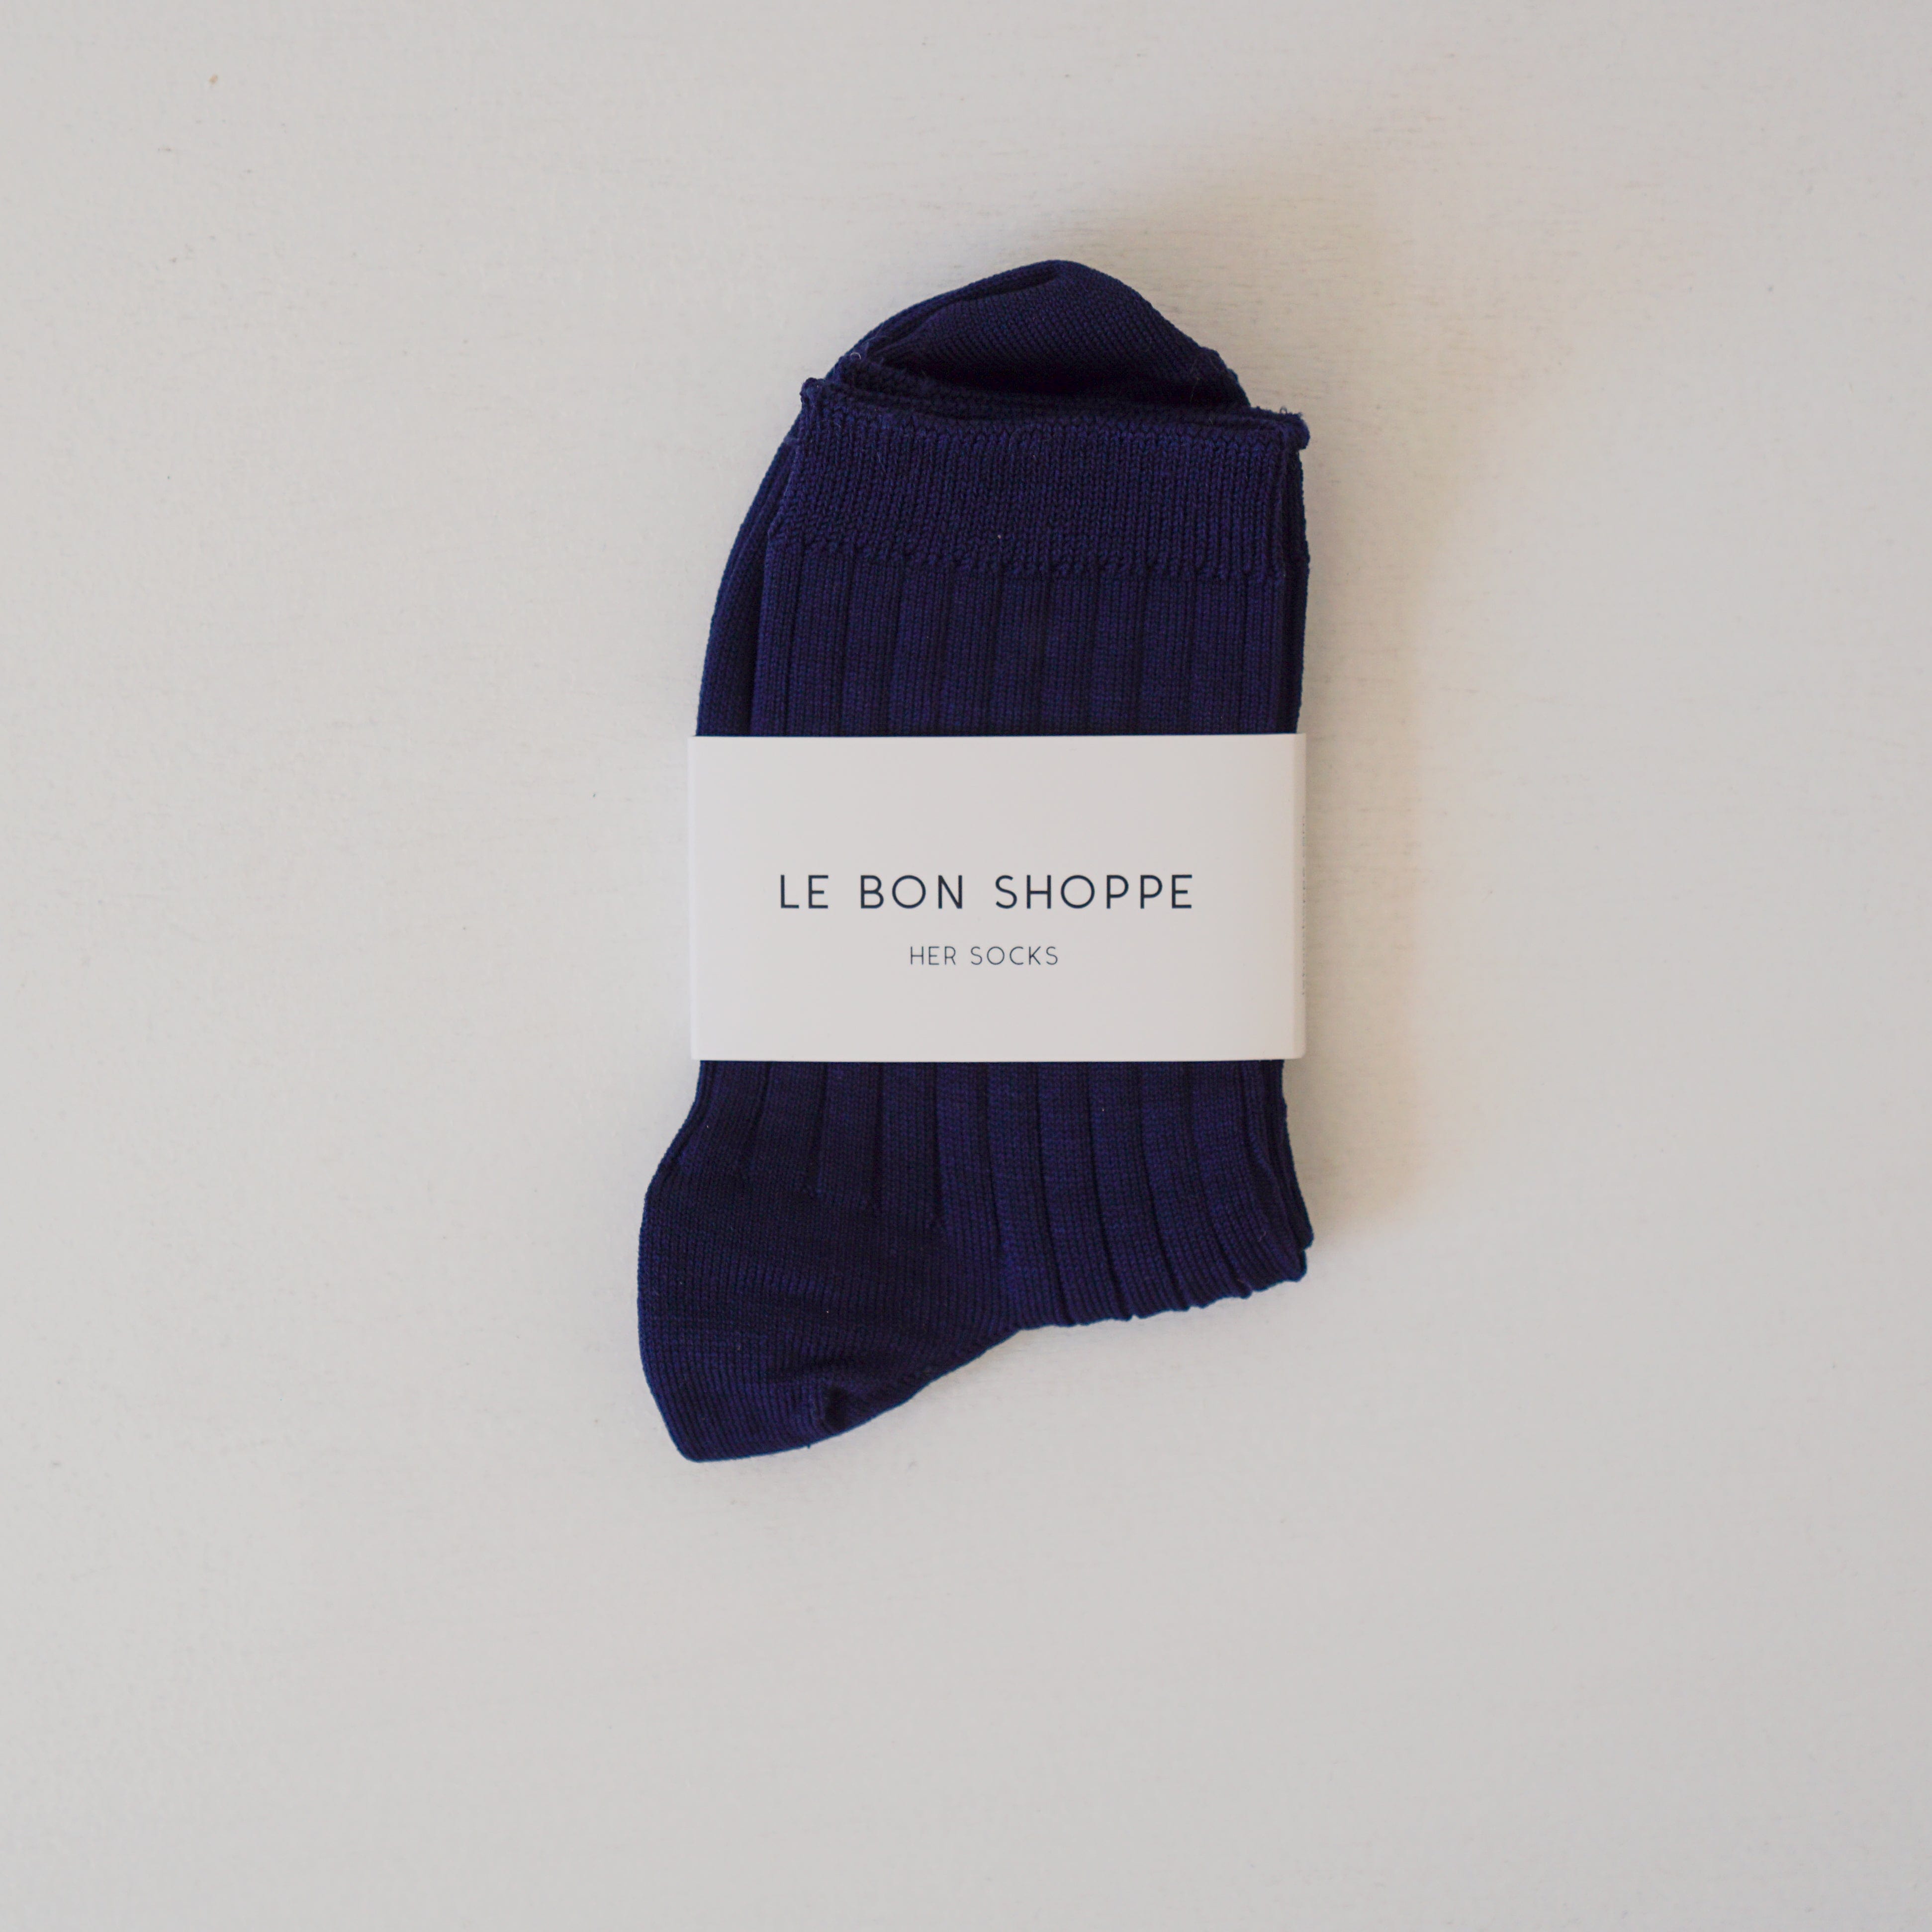 Le Bon Shoppe socks Navy Le Bon "Her" Socks